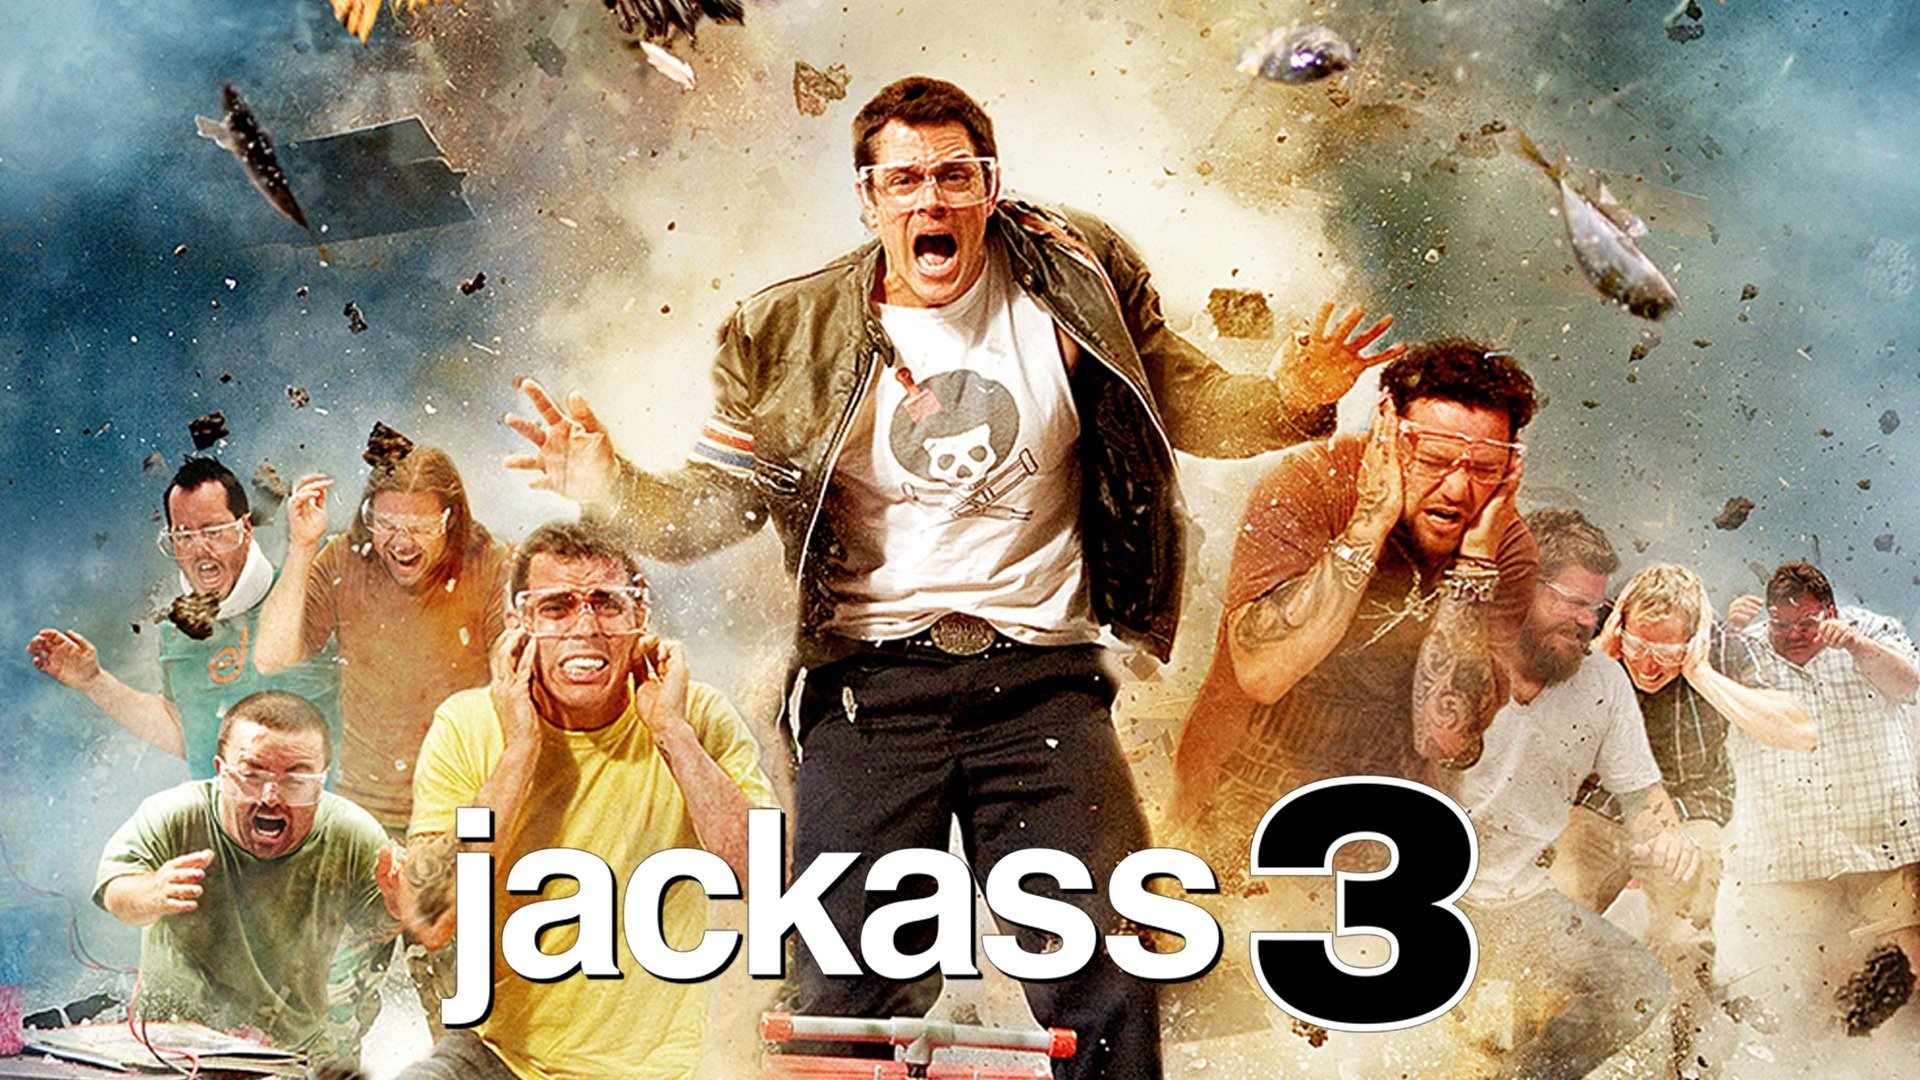 jackass 3 cast